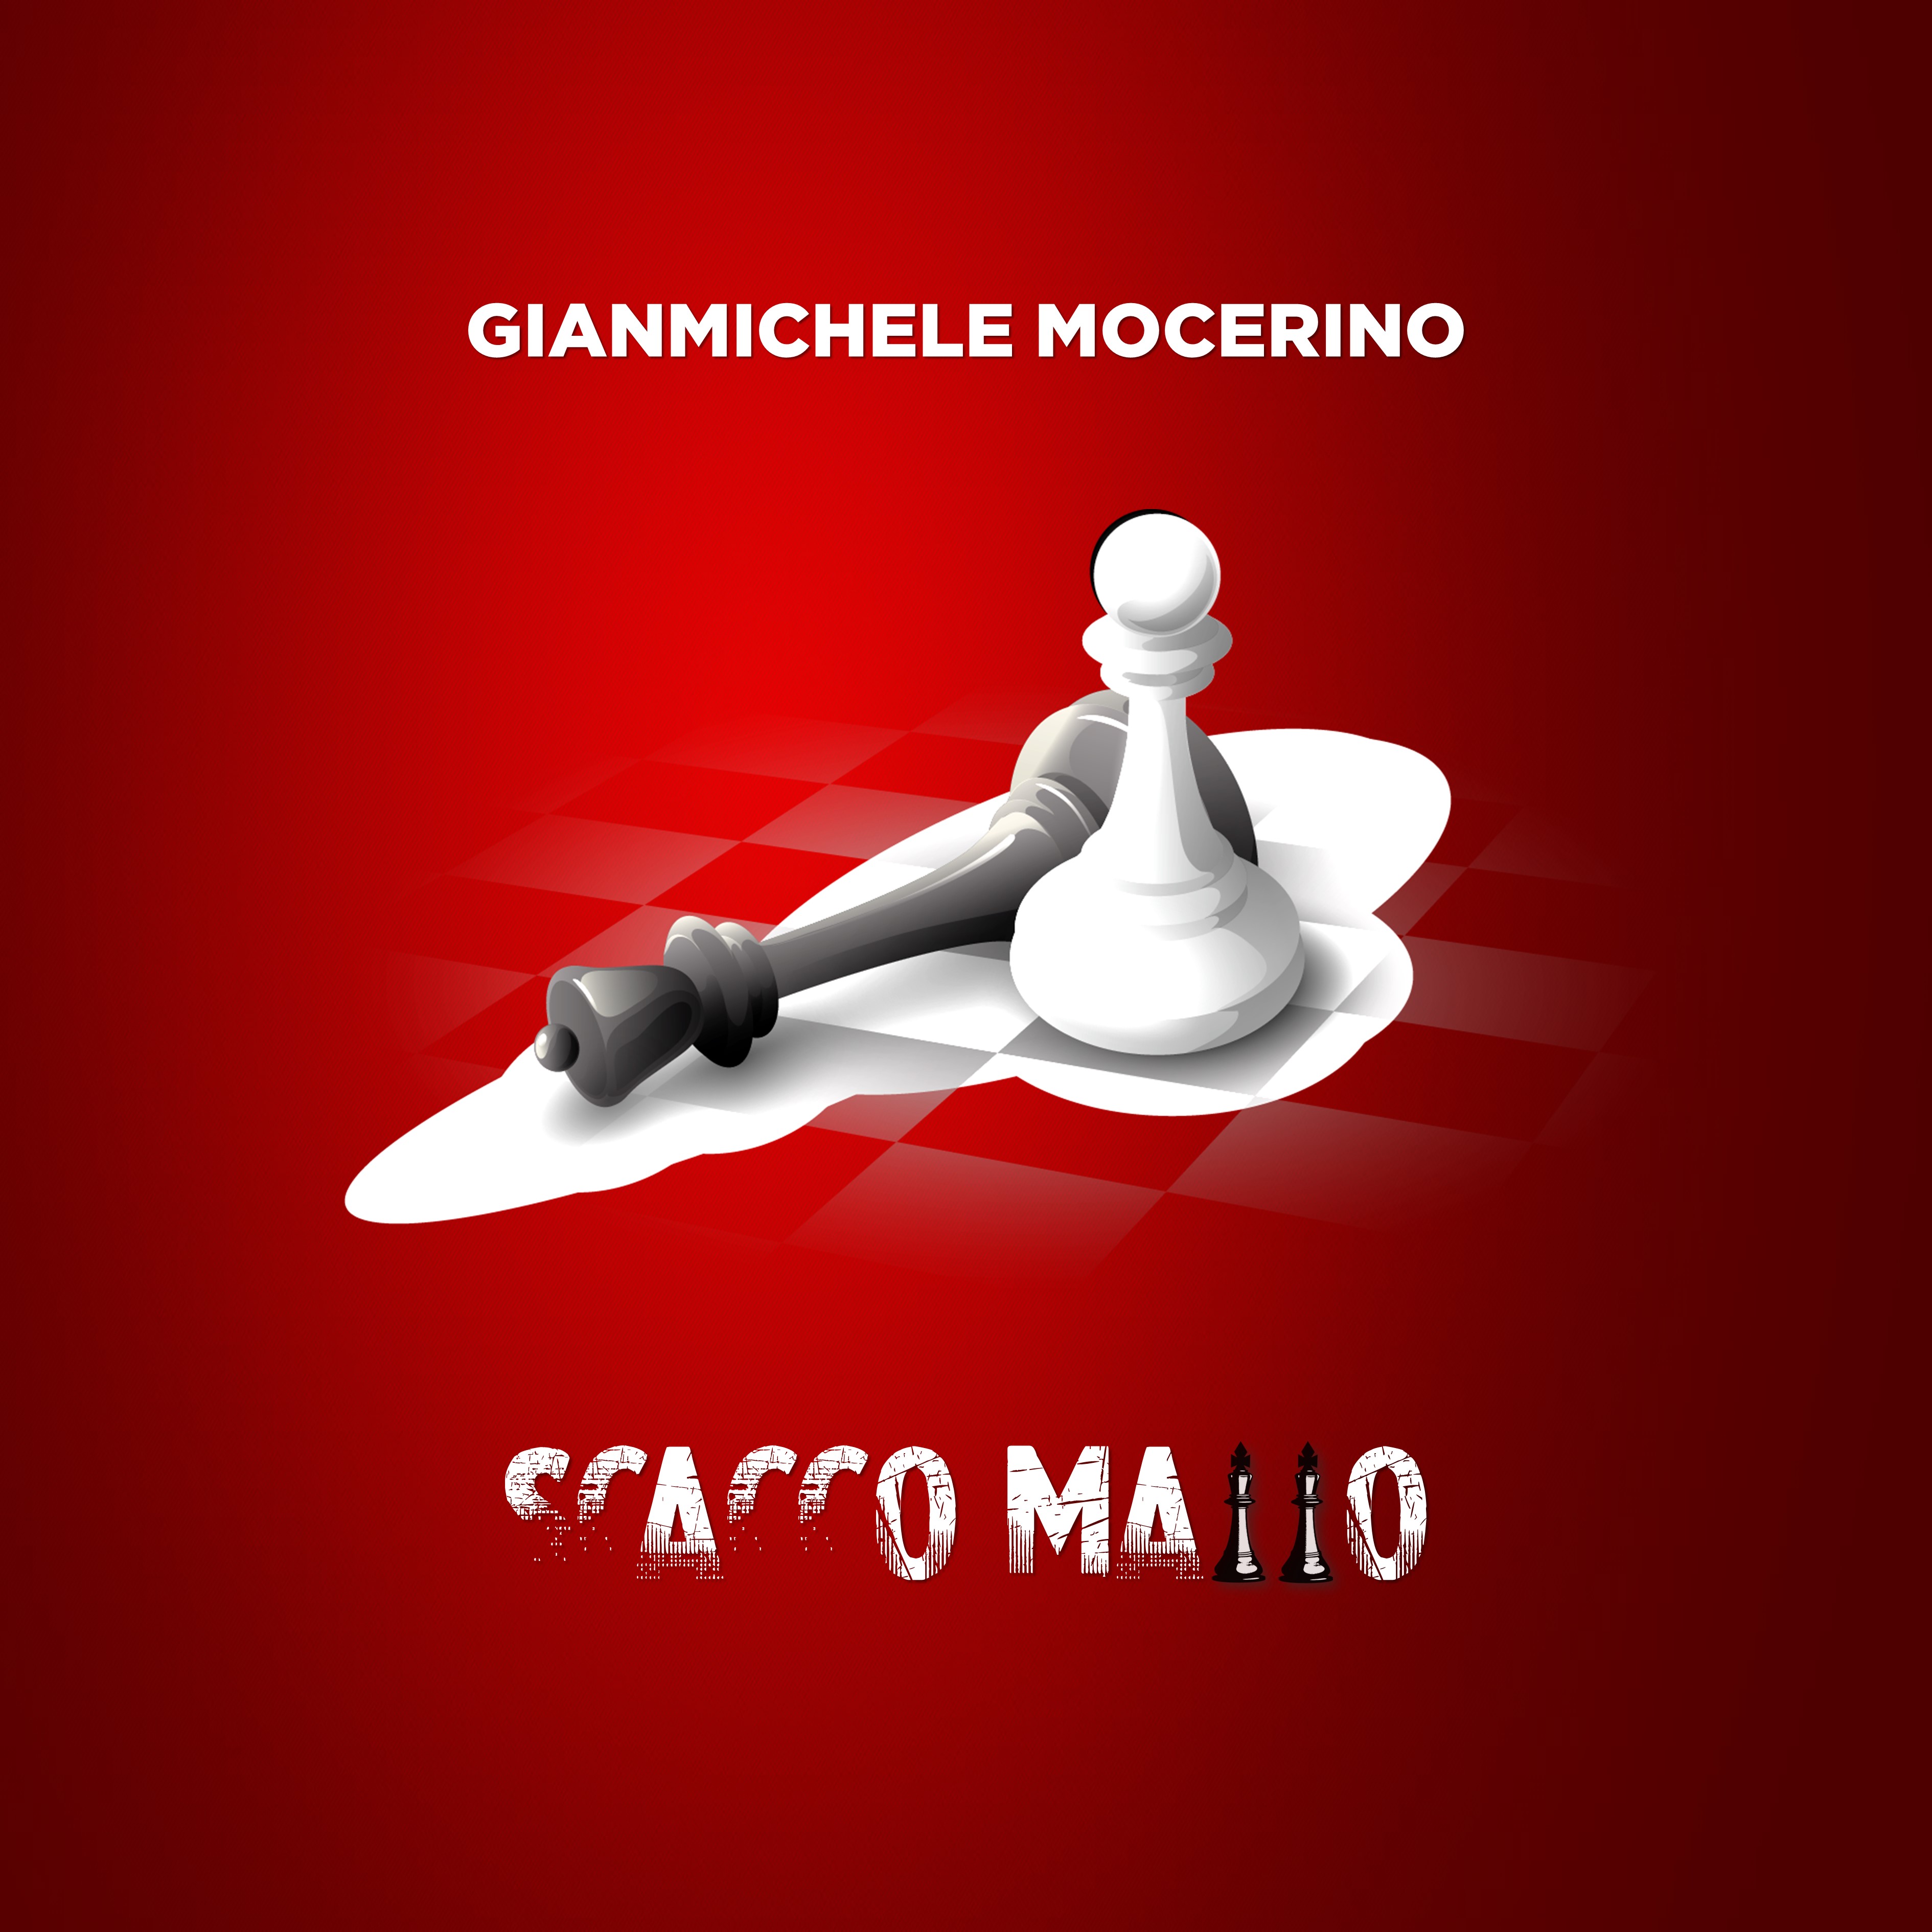 SCACCO MATTO - E' l'ultimo singolo di Gianmichele Mocerino in radio e su tutti i digital store dal 29/01/2021